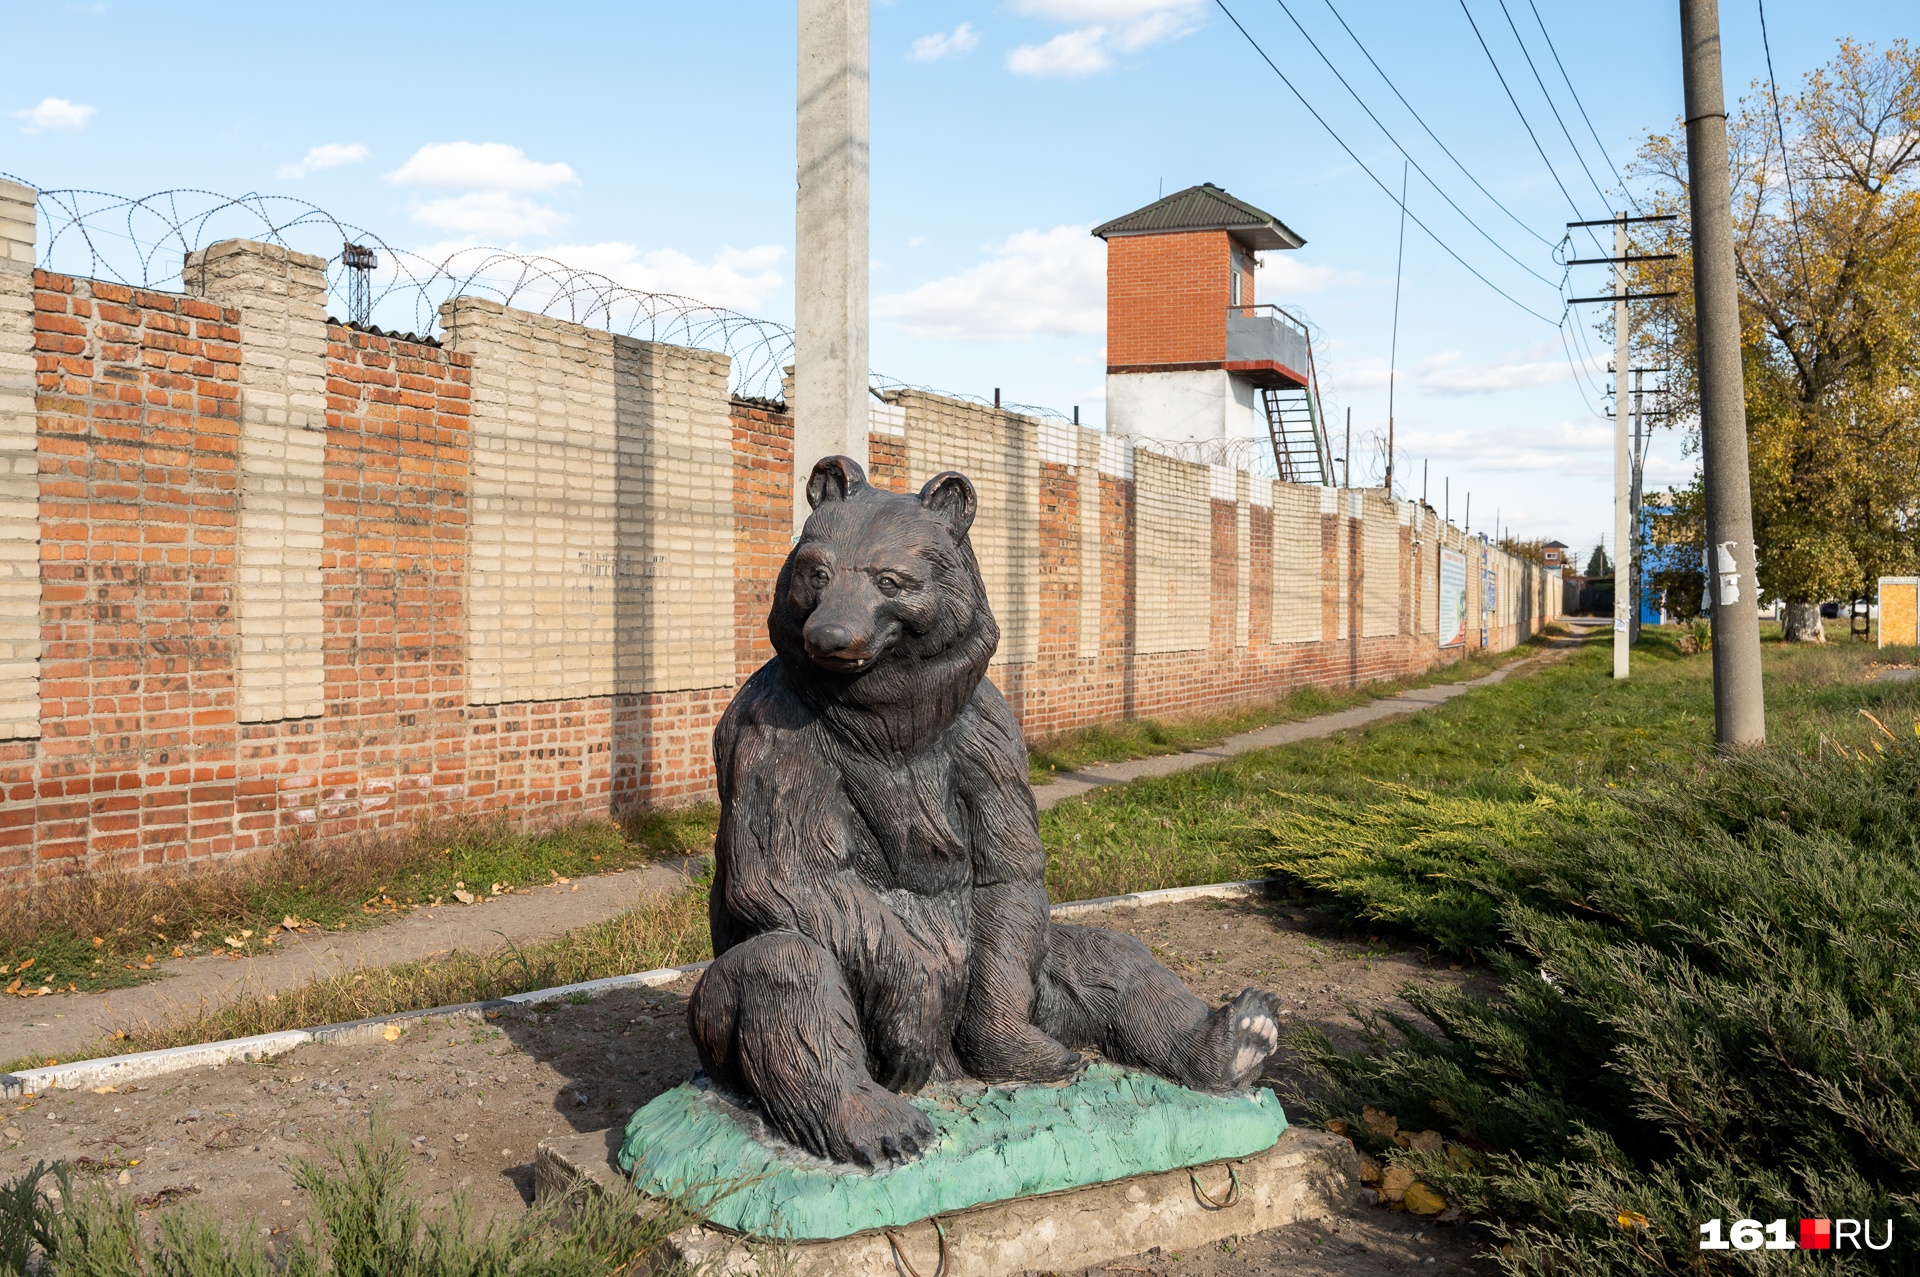 Перед ИК-15 установлен большой черный медведь